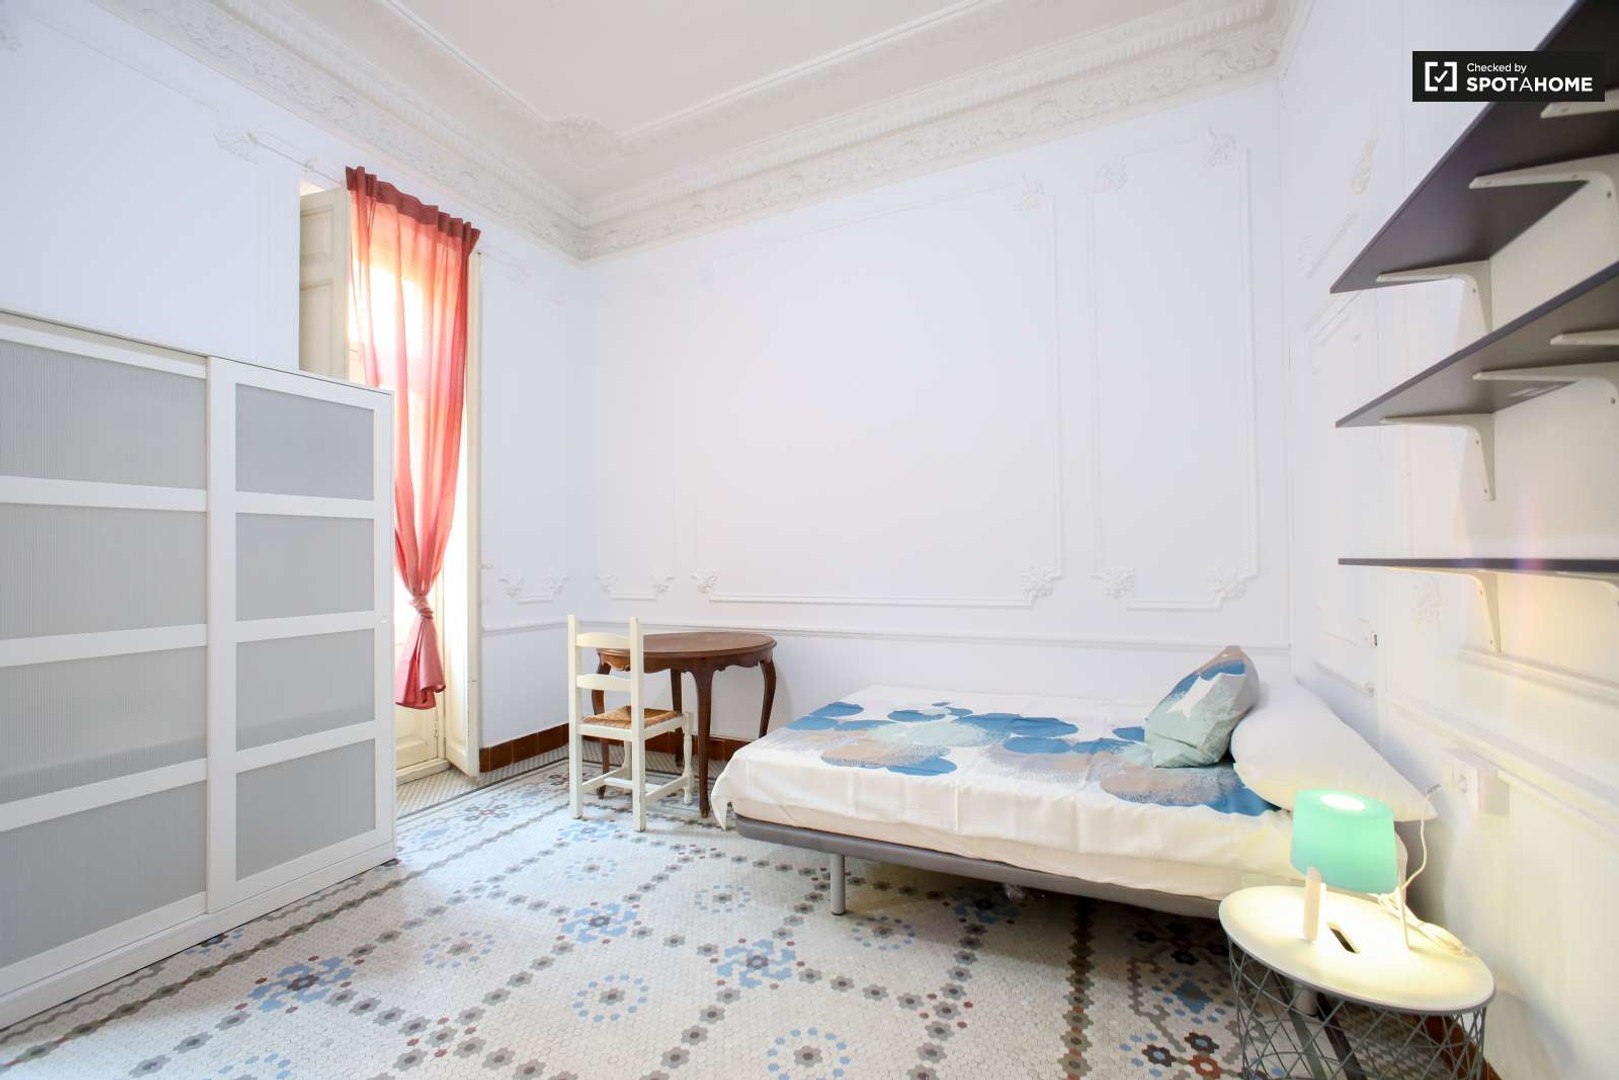 Pokój do wynajęcia z podwójnym łóżkiem w Walencja